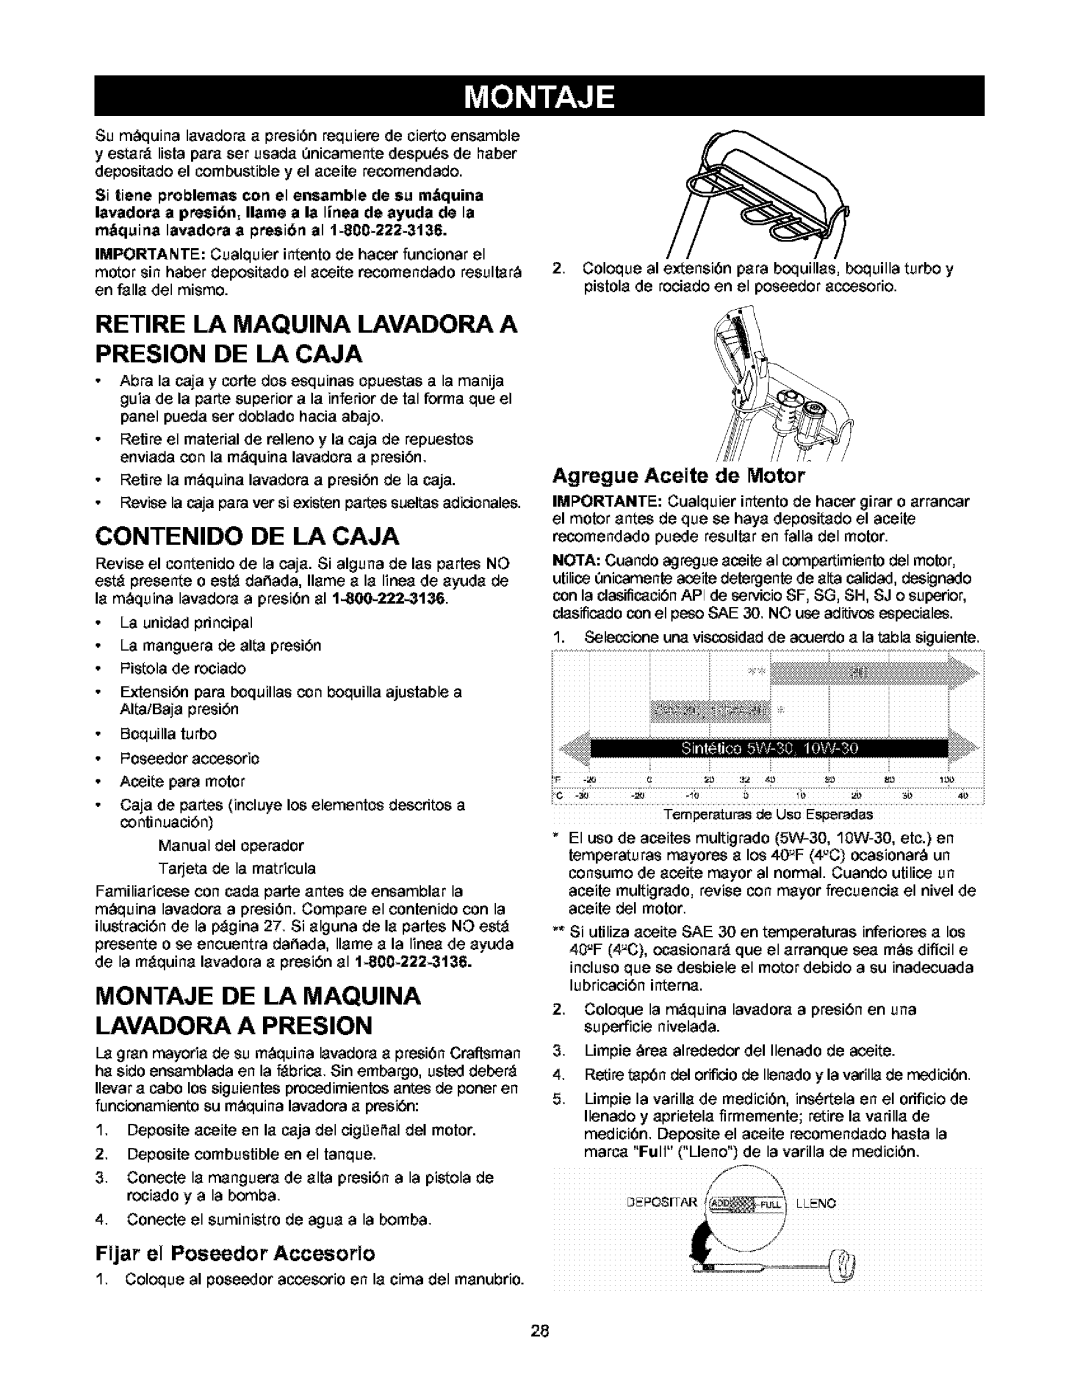 Craftsman 580.752 RETIRE LA MAQUINA LAVADORA A PRESlON DE LA CAJA, Contenido De La Caja, Fijar el Poseedor Accesorio 